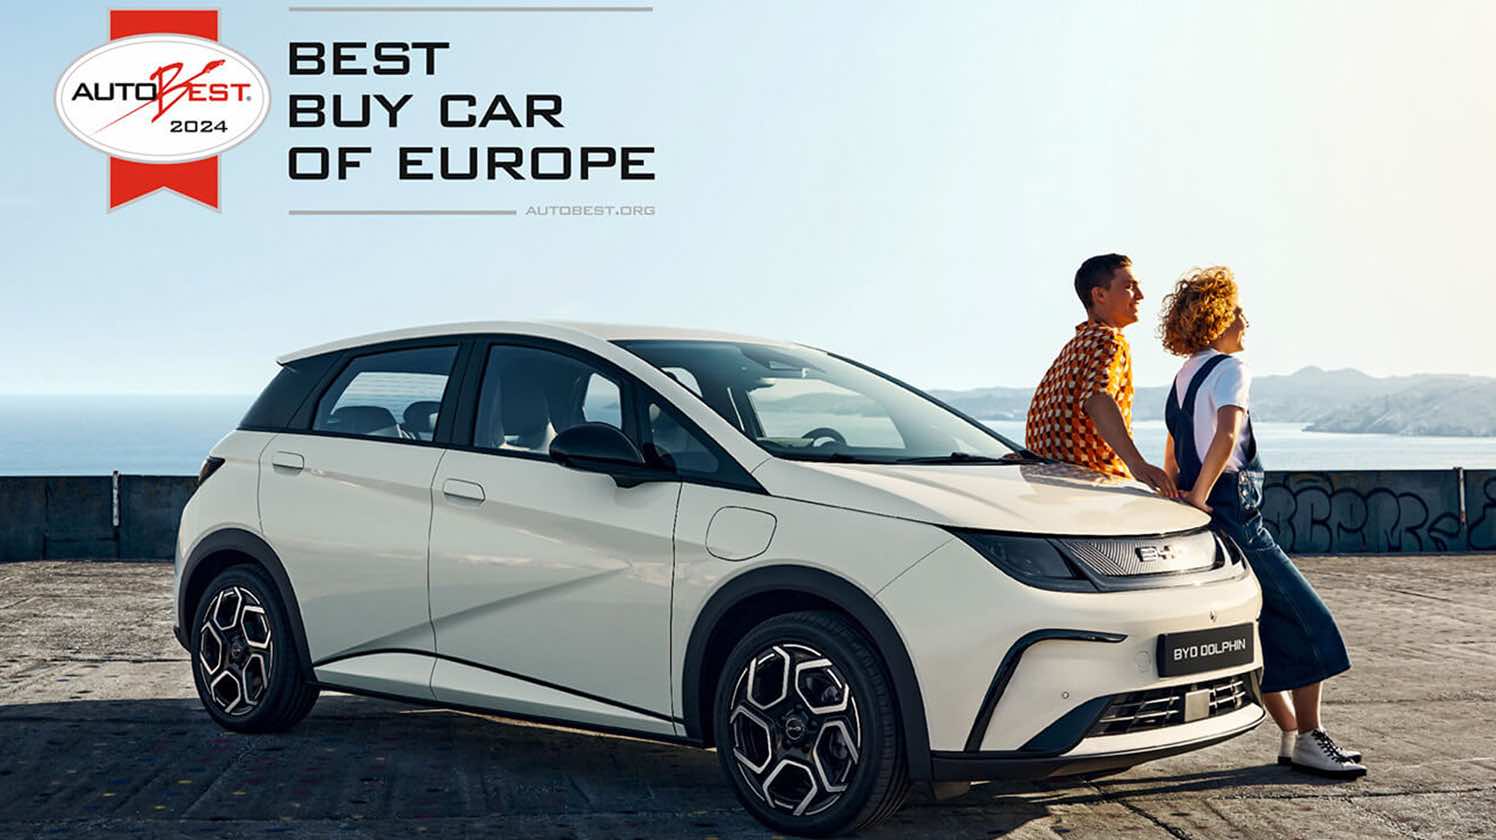 カーアワード「AUTOBEST」の「Best Buy Car of Europe 2024」を受賞